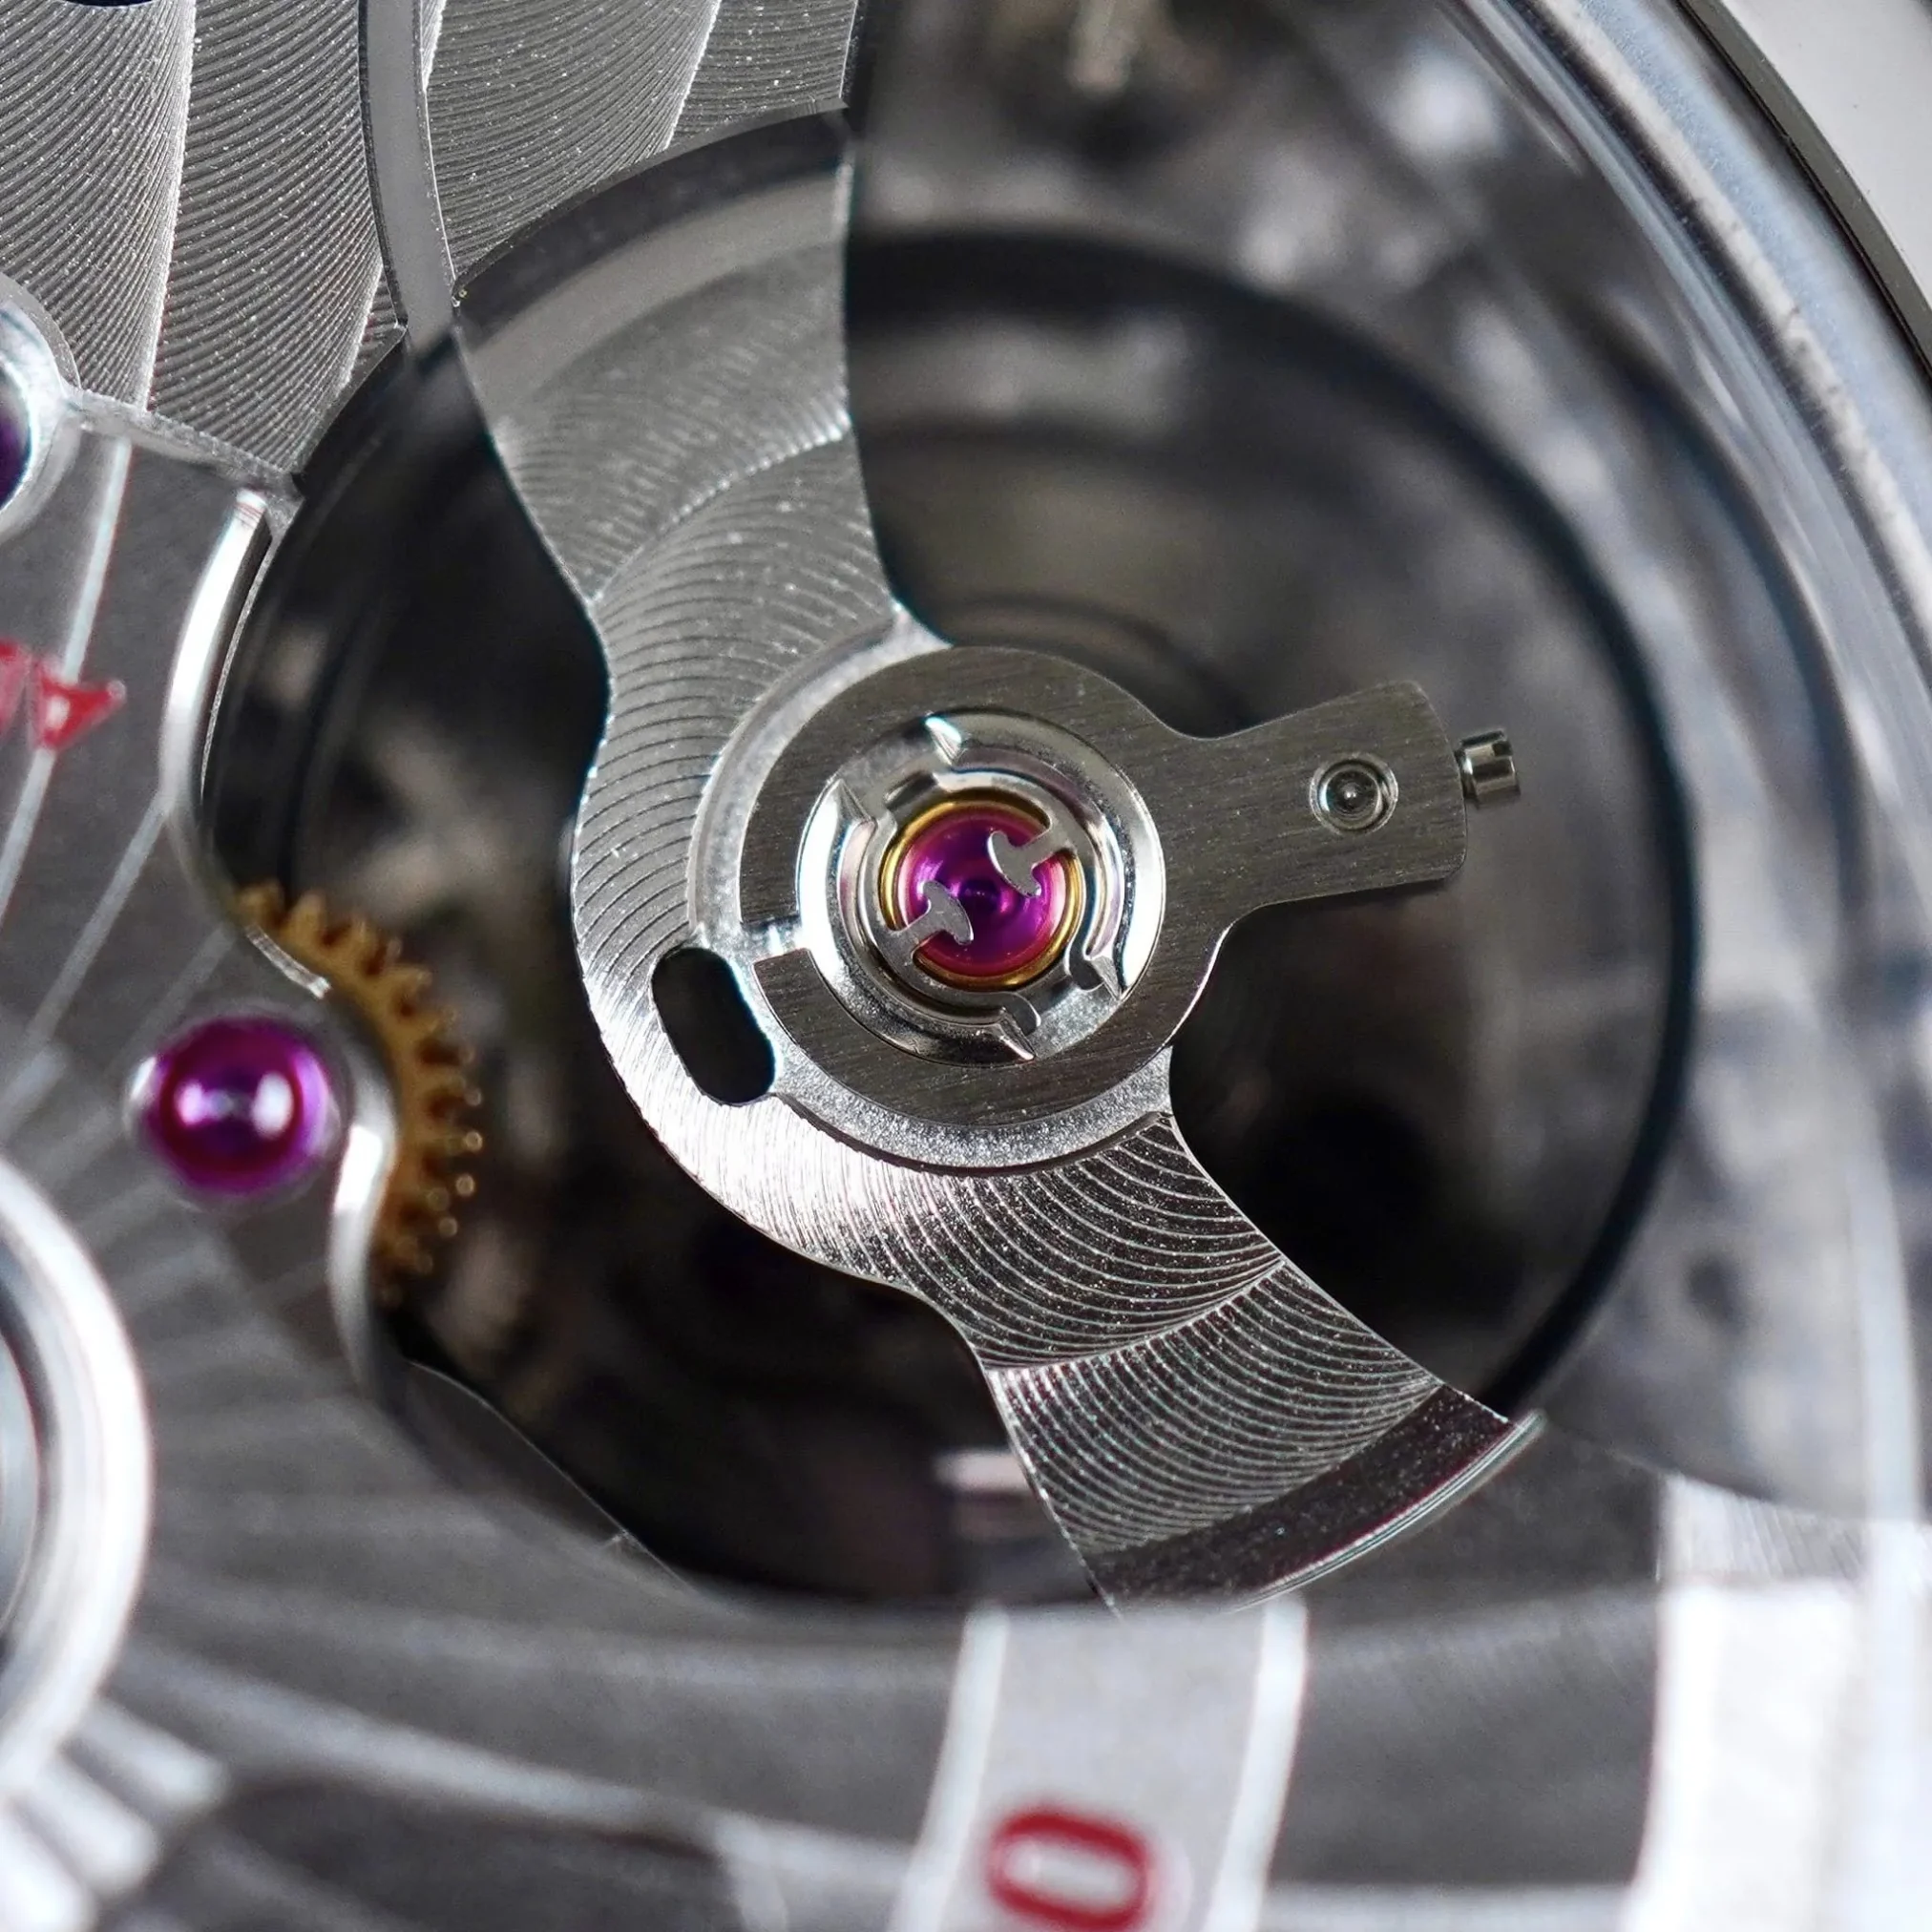 Đồng hồ Omega Speedmaster Two Counters Chronometer Chronograph 311.93.44.51.03.001 mặt số màu xanh. Dây đeo bằng da. Thân vỏ bằng Titanium.